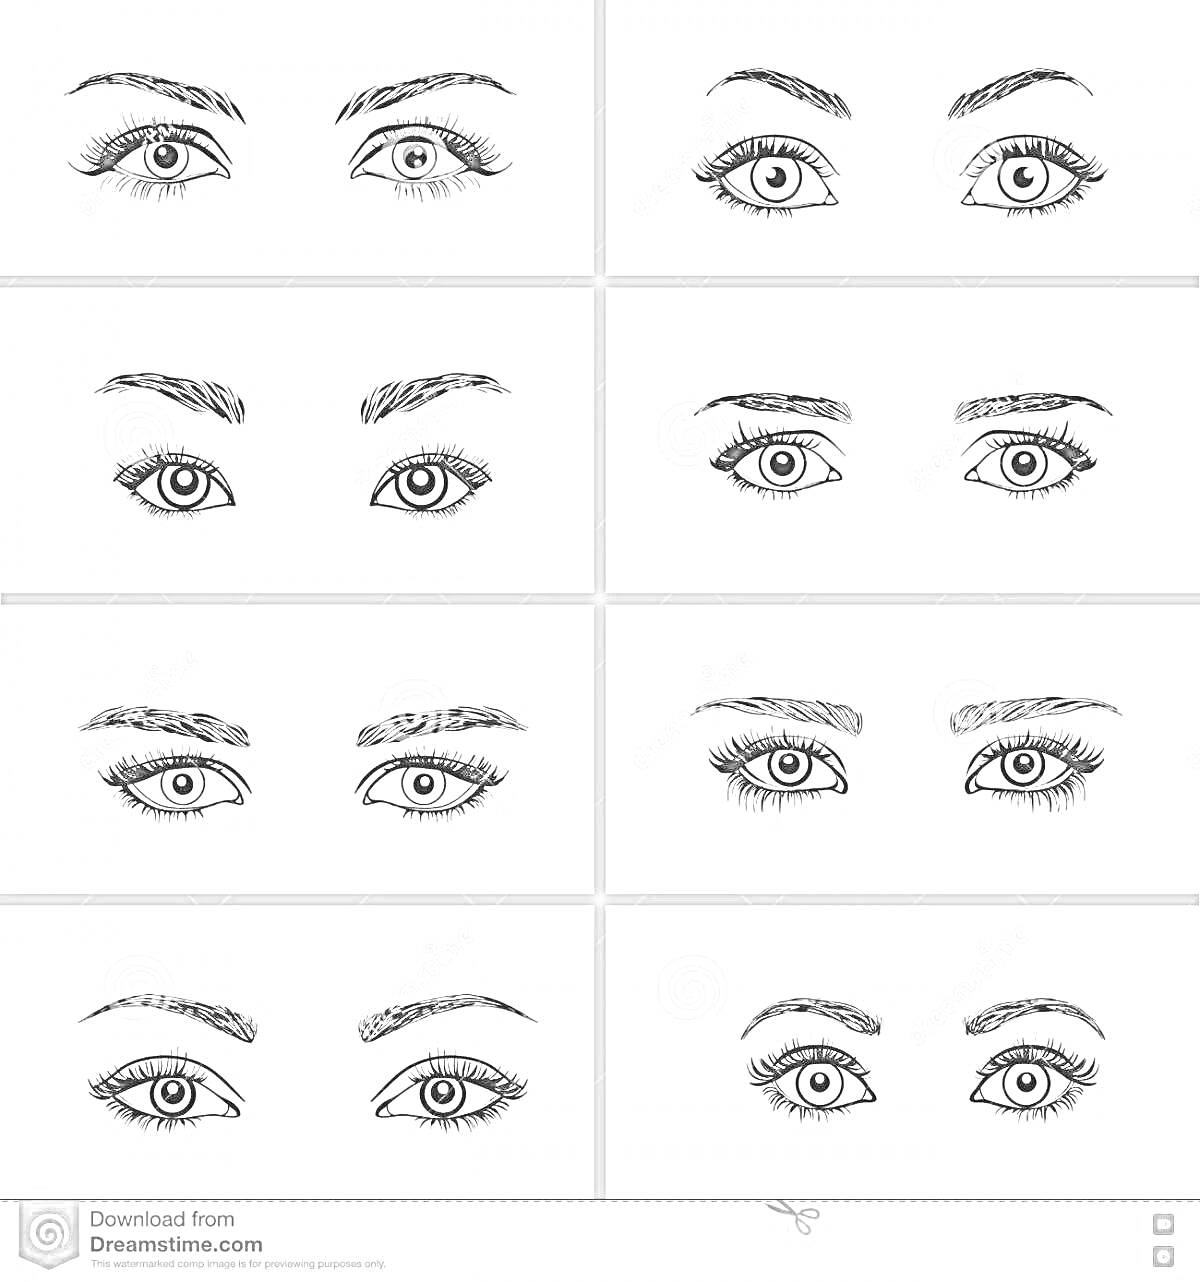 Раскраска Восемь различных стилей макияжа для глаз, включающие оформление бровей, формы ресниц и подводки глаз